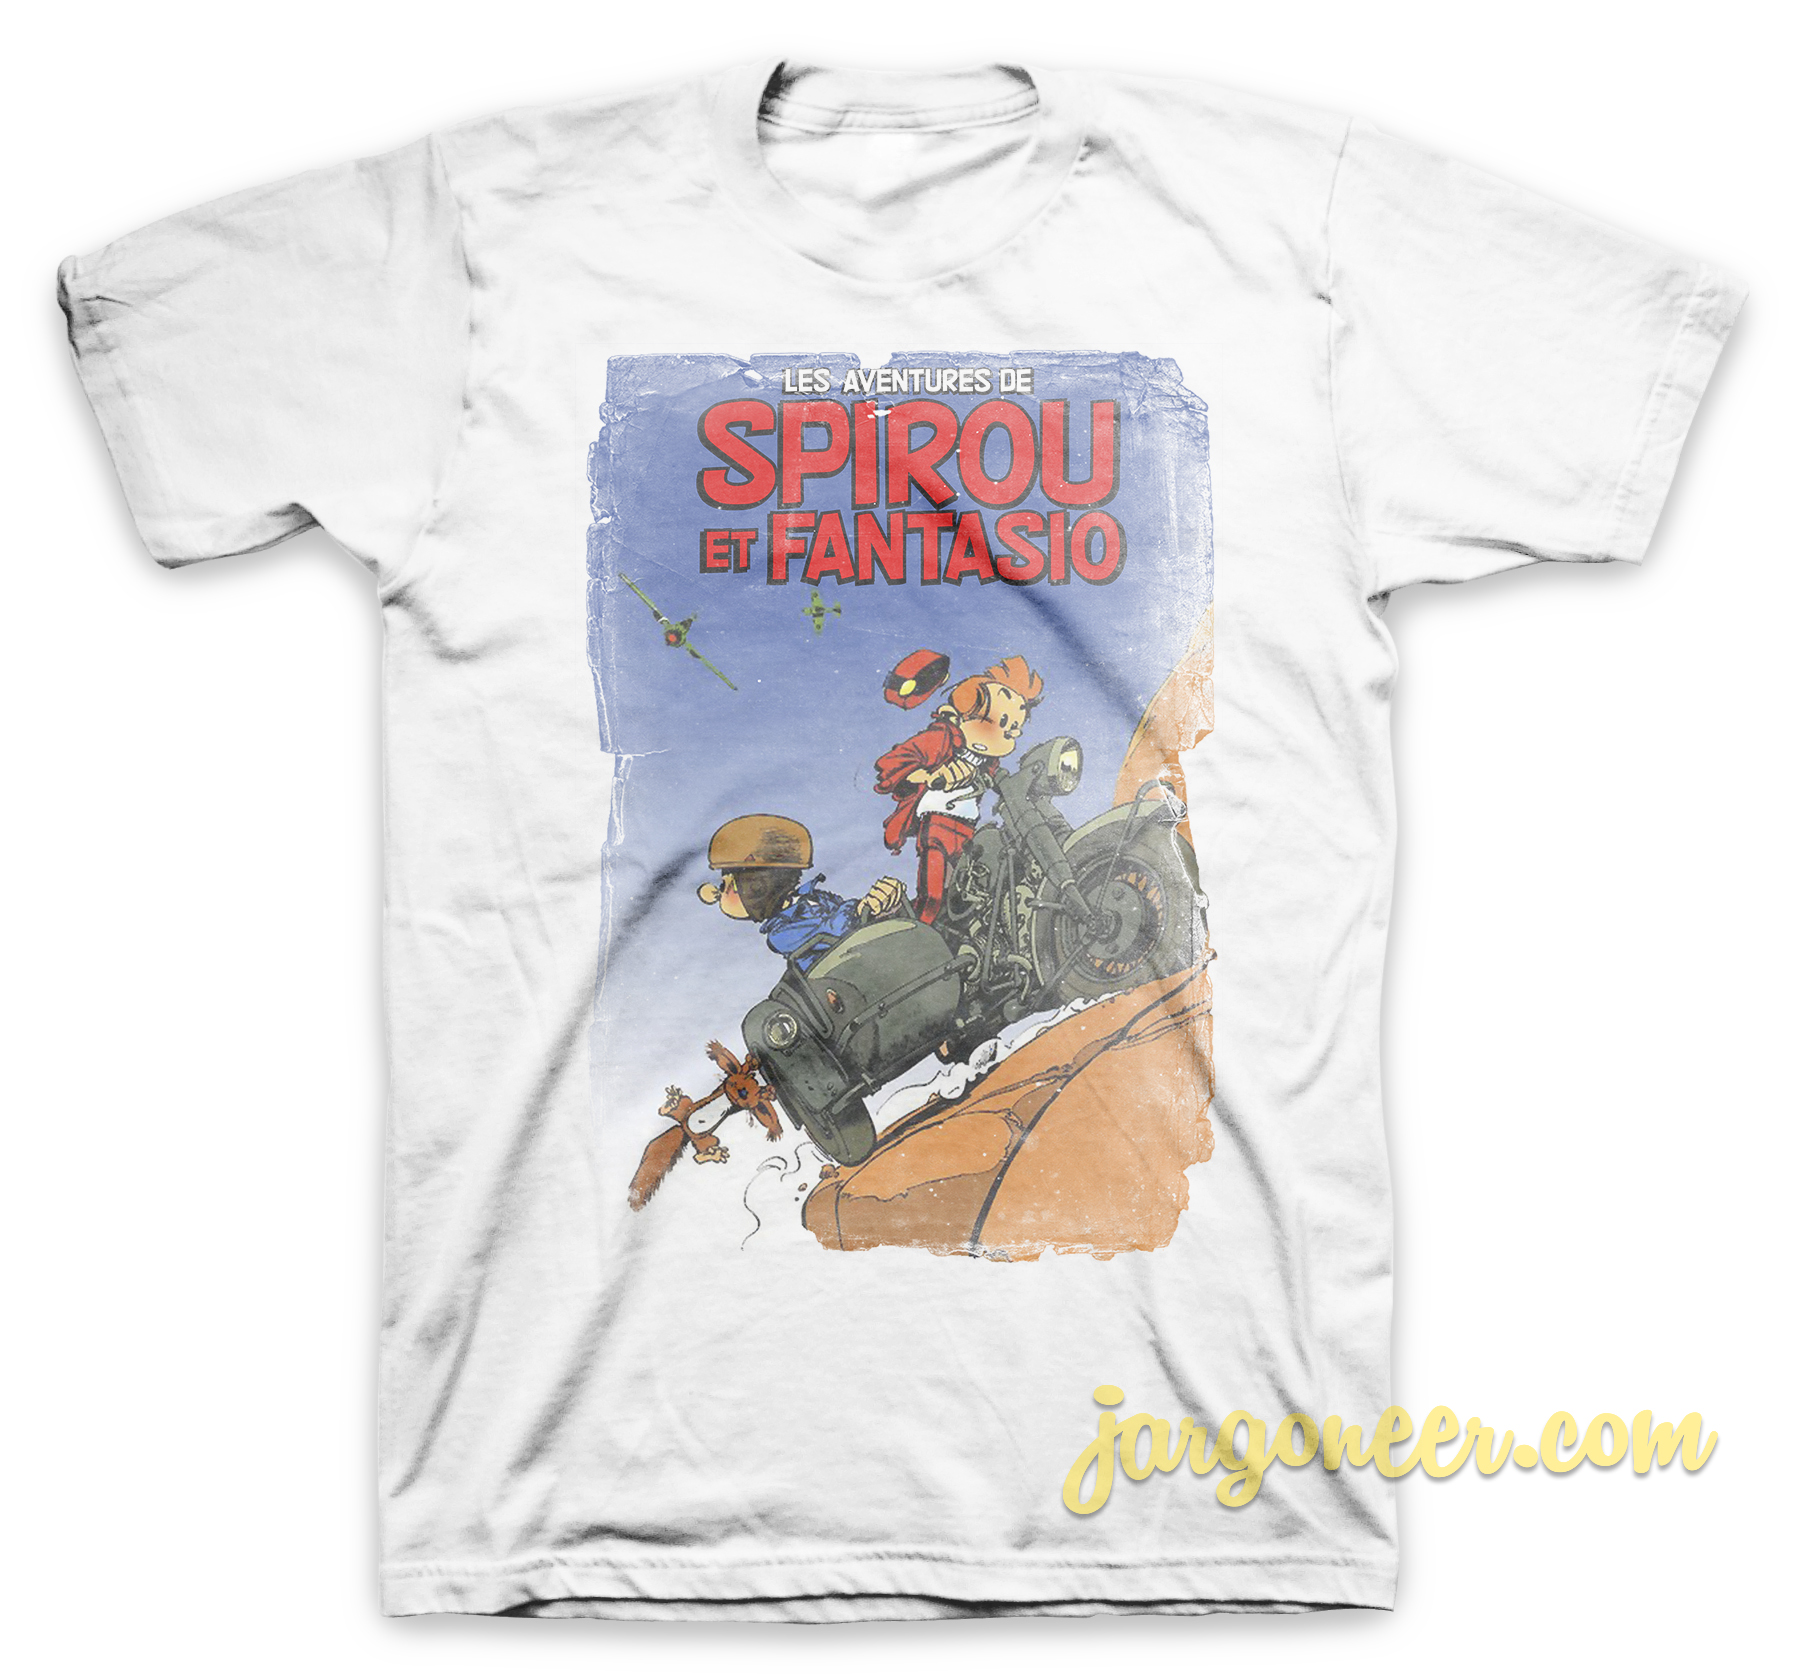 Spirou Les Adventure De Spirou Et Fantasio White T Shirt - Shop Unique Graphic Cool Shirt Designs